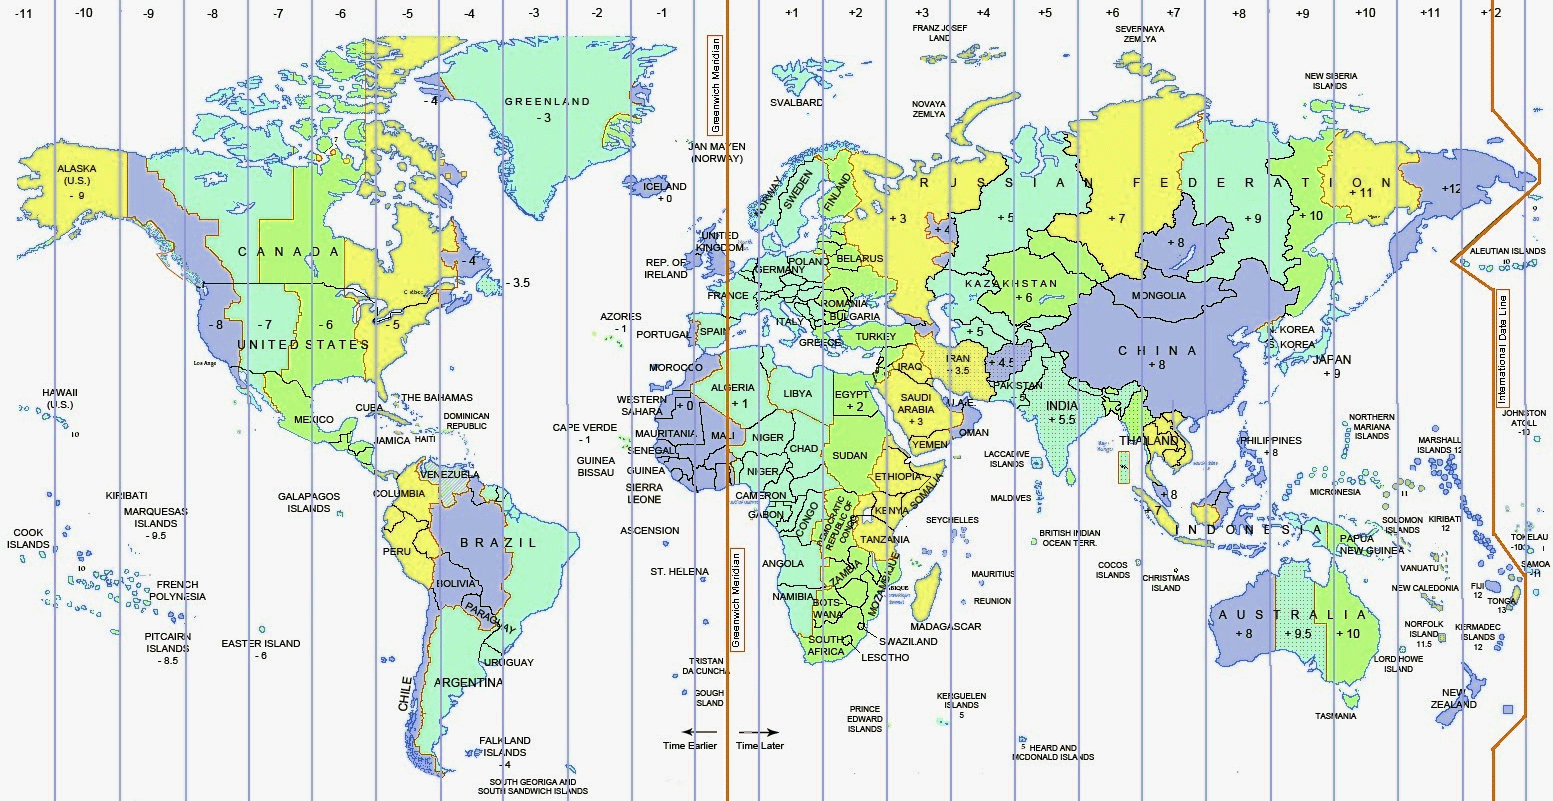 Какой часовой пояс в сибири. Карта часовых поясов Евразии. Карта часовых поясов России по Гринвичу.